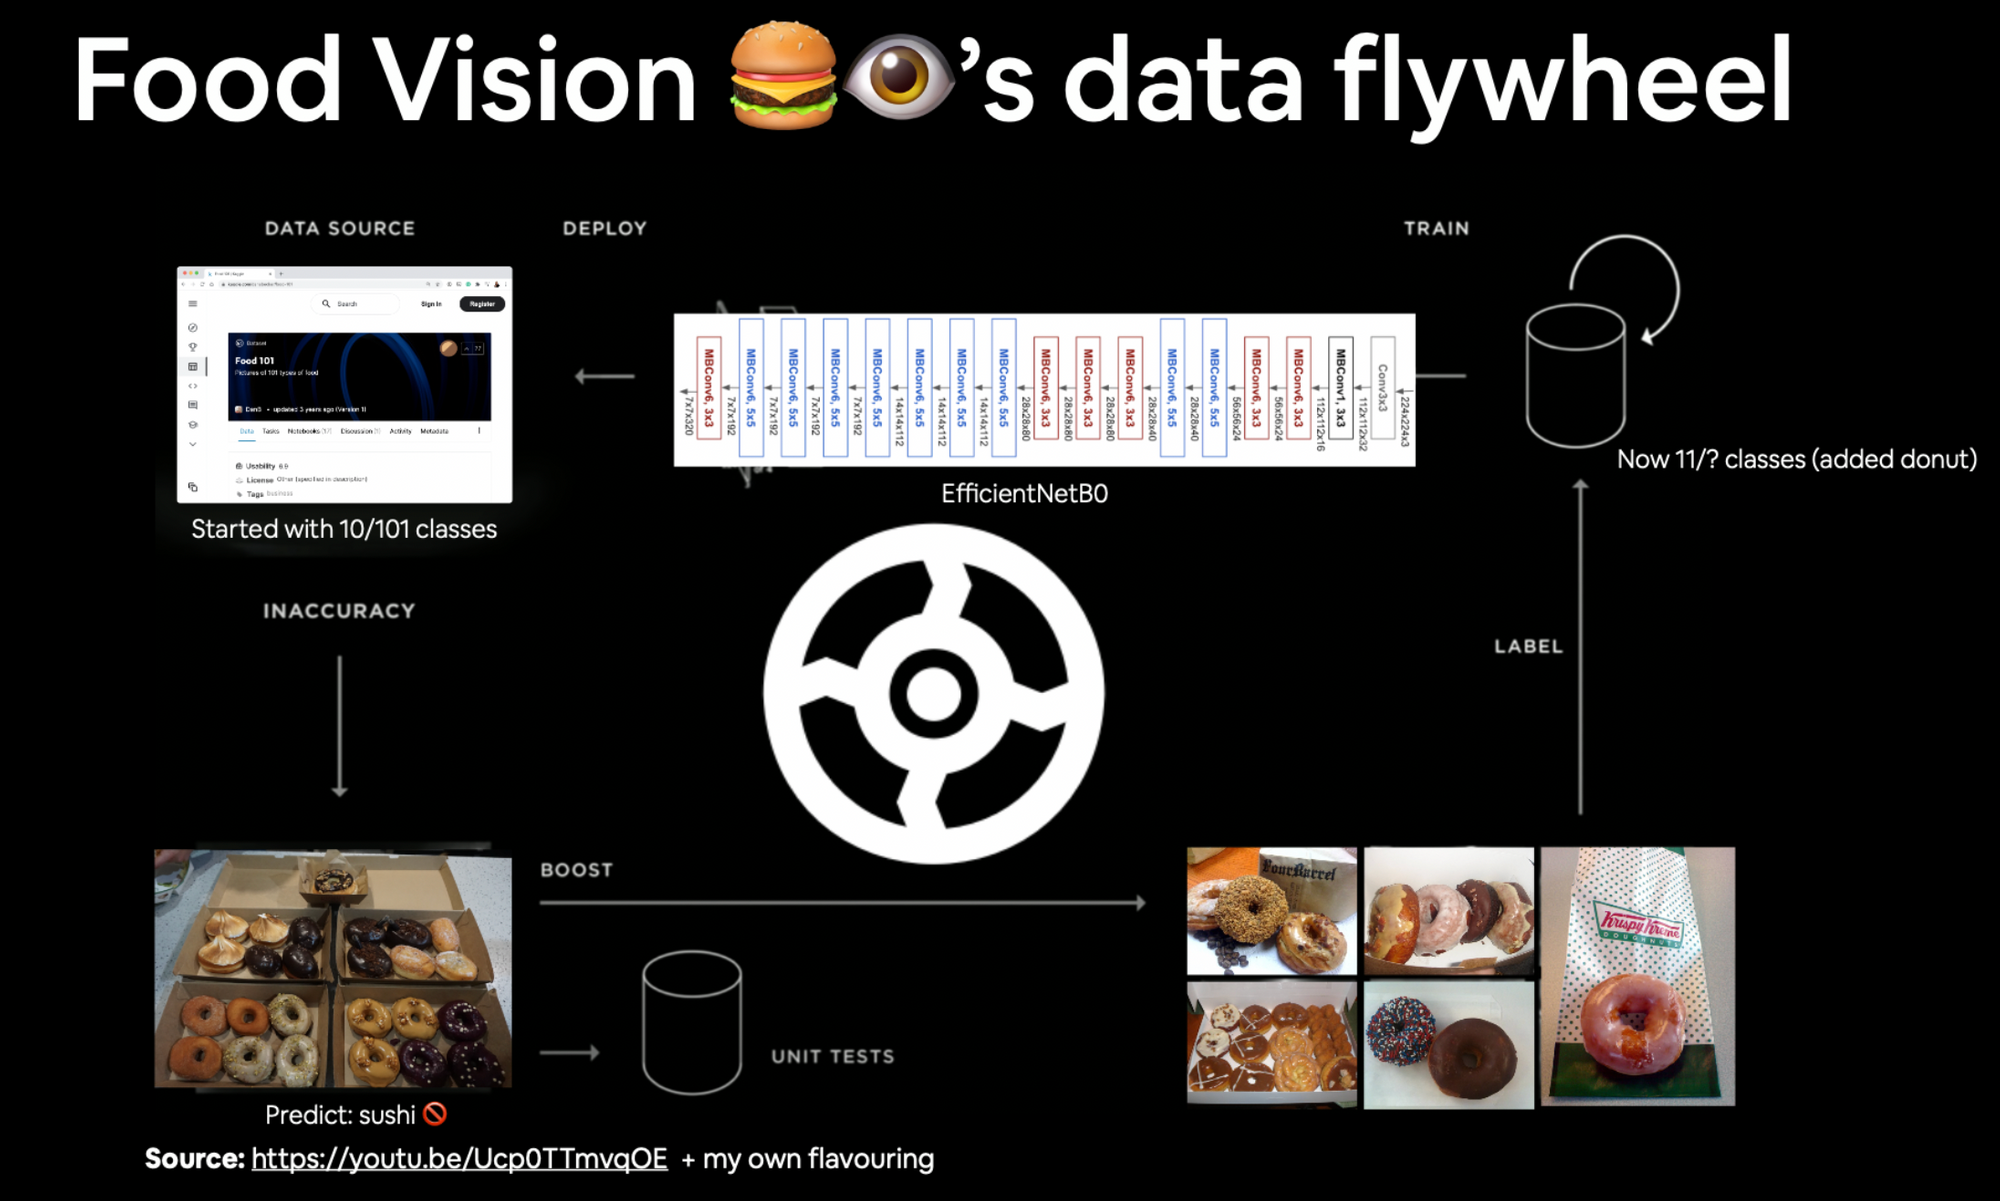 food vision's data flywheel